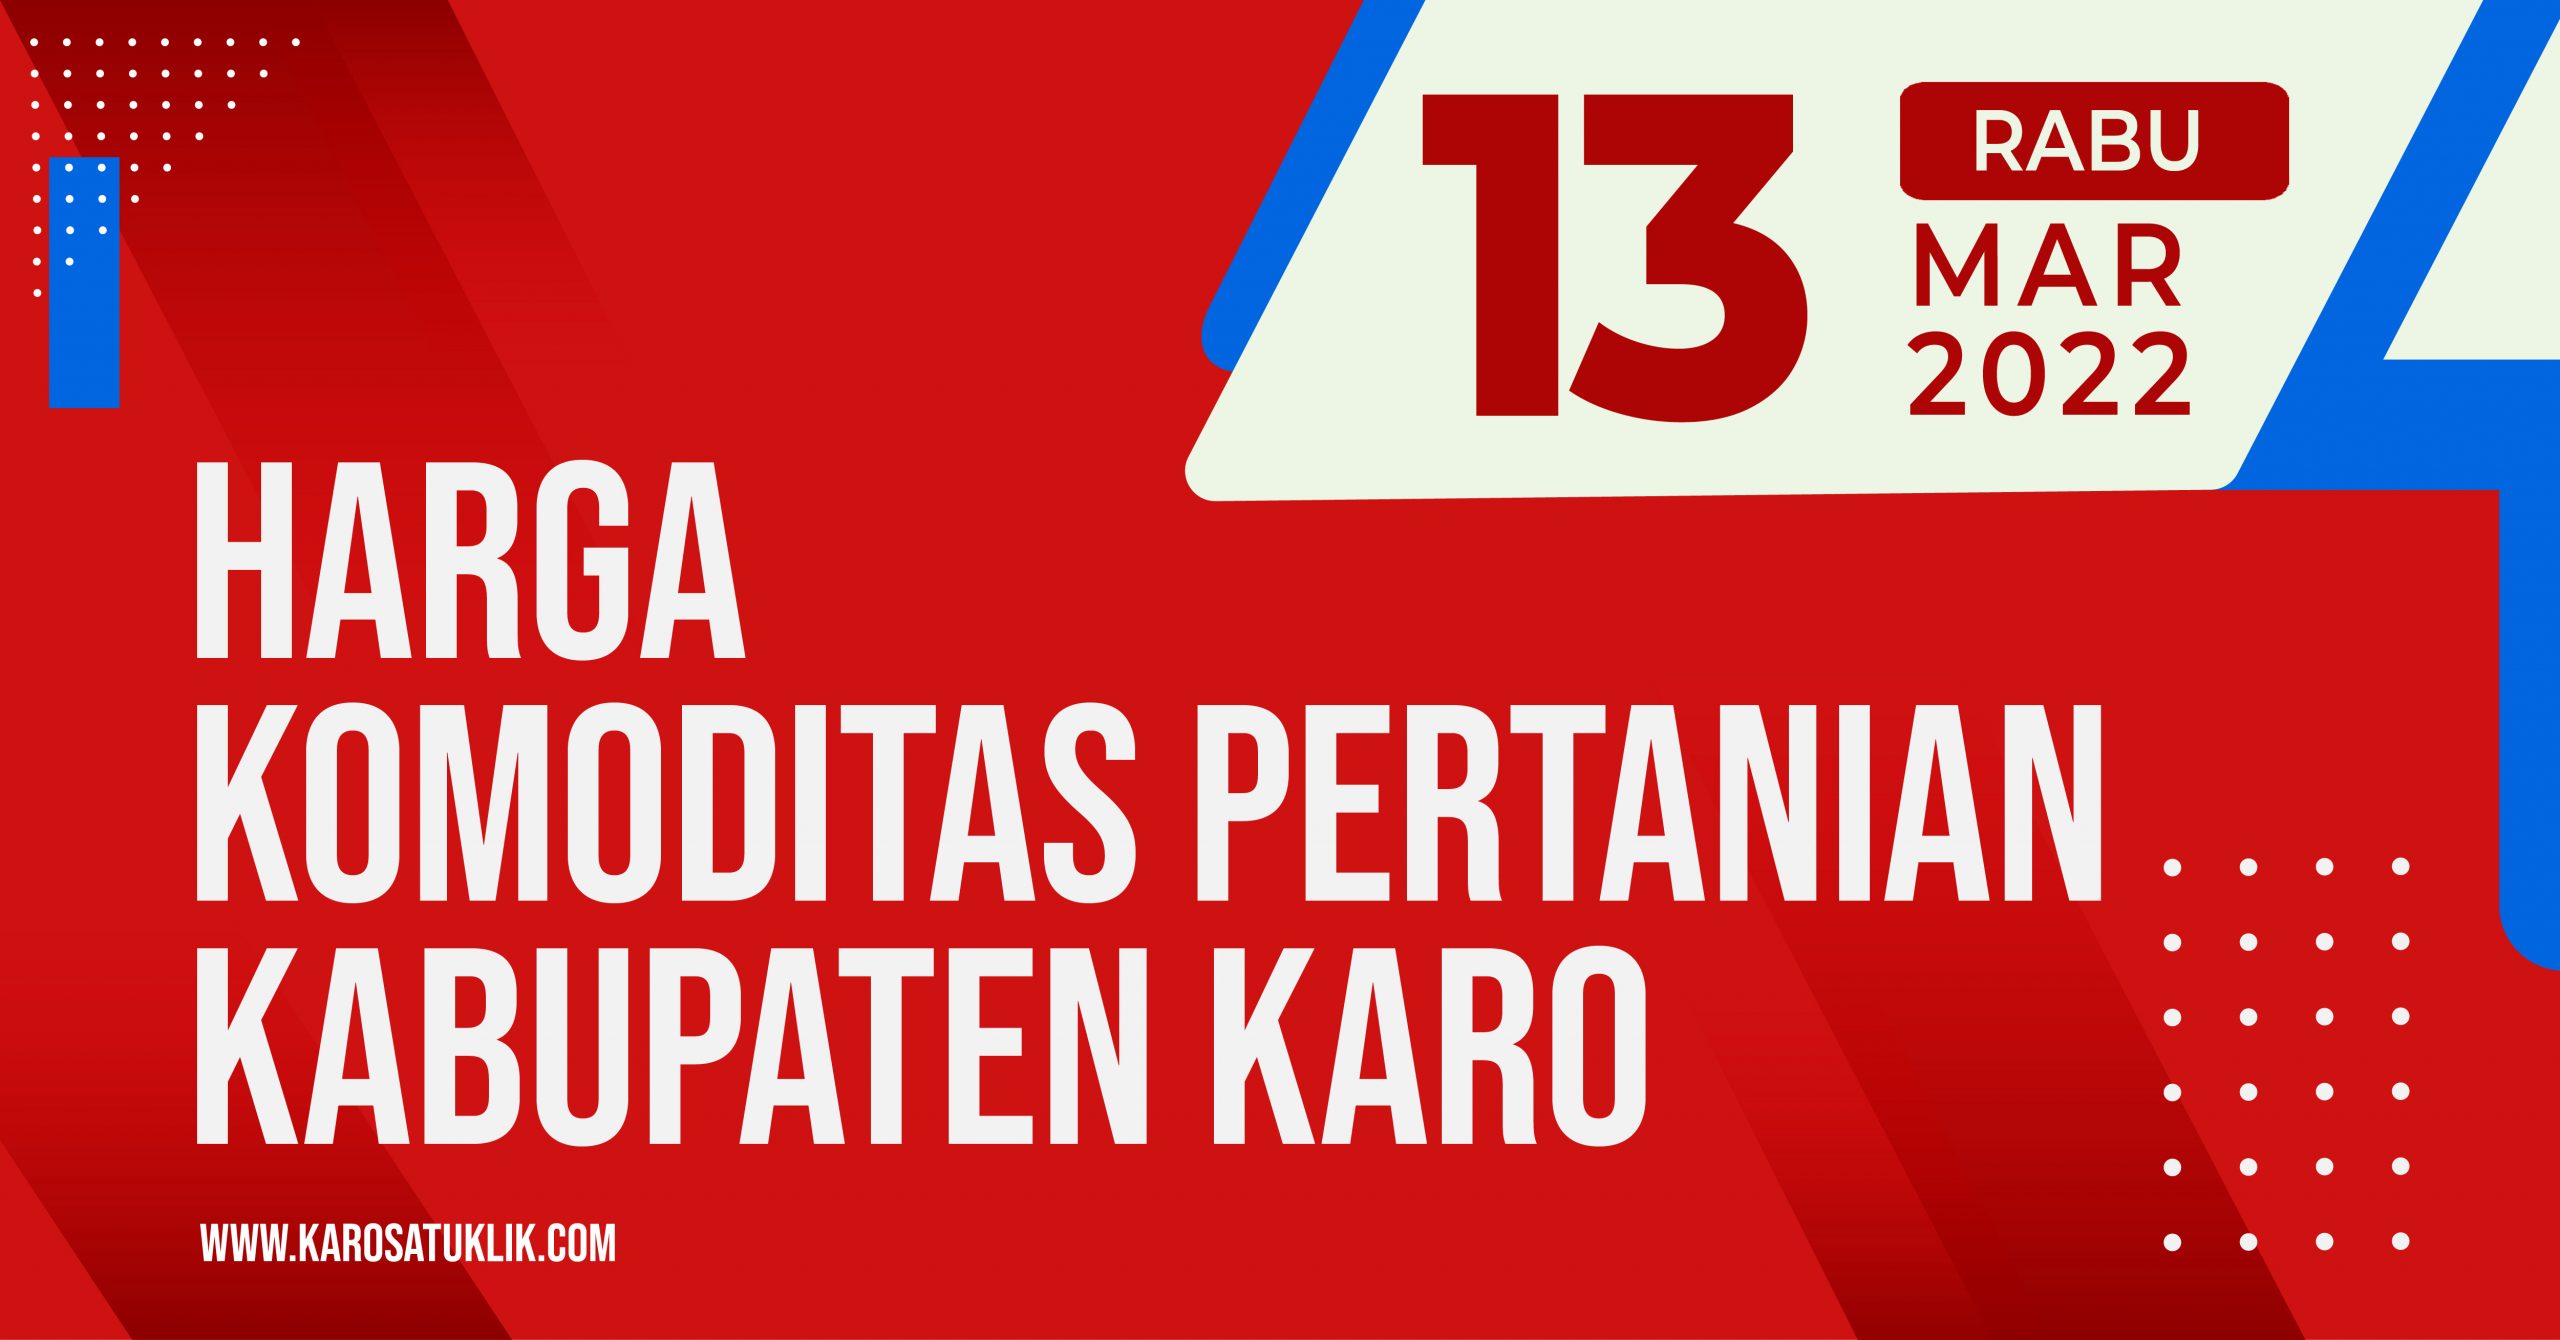 Daftar Harga Komoditas Pertanian Kabupaten Karo, Rabu 13 April 2022